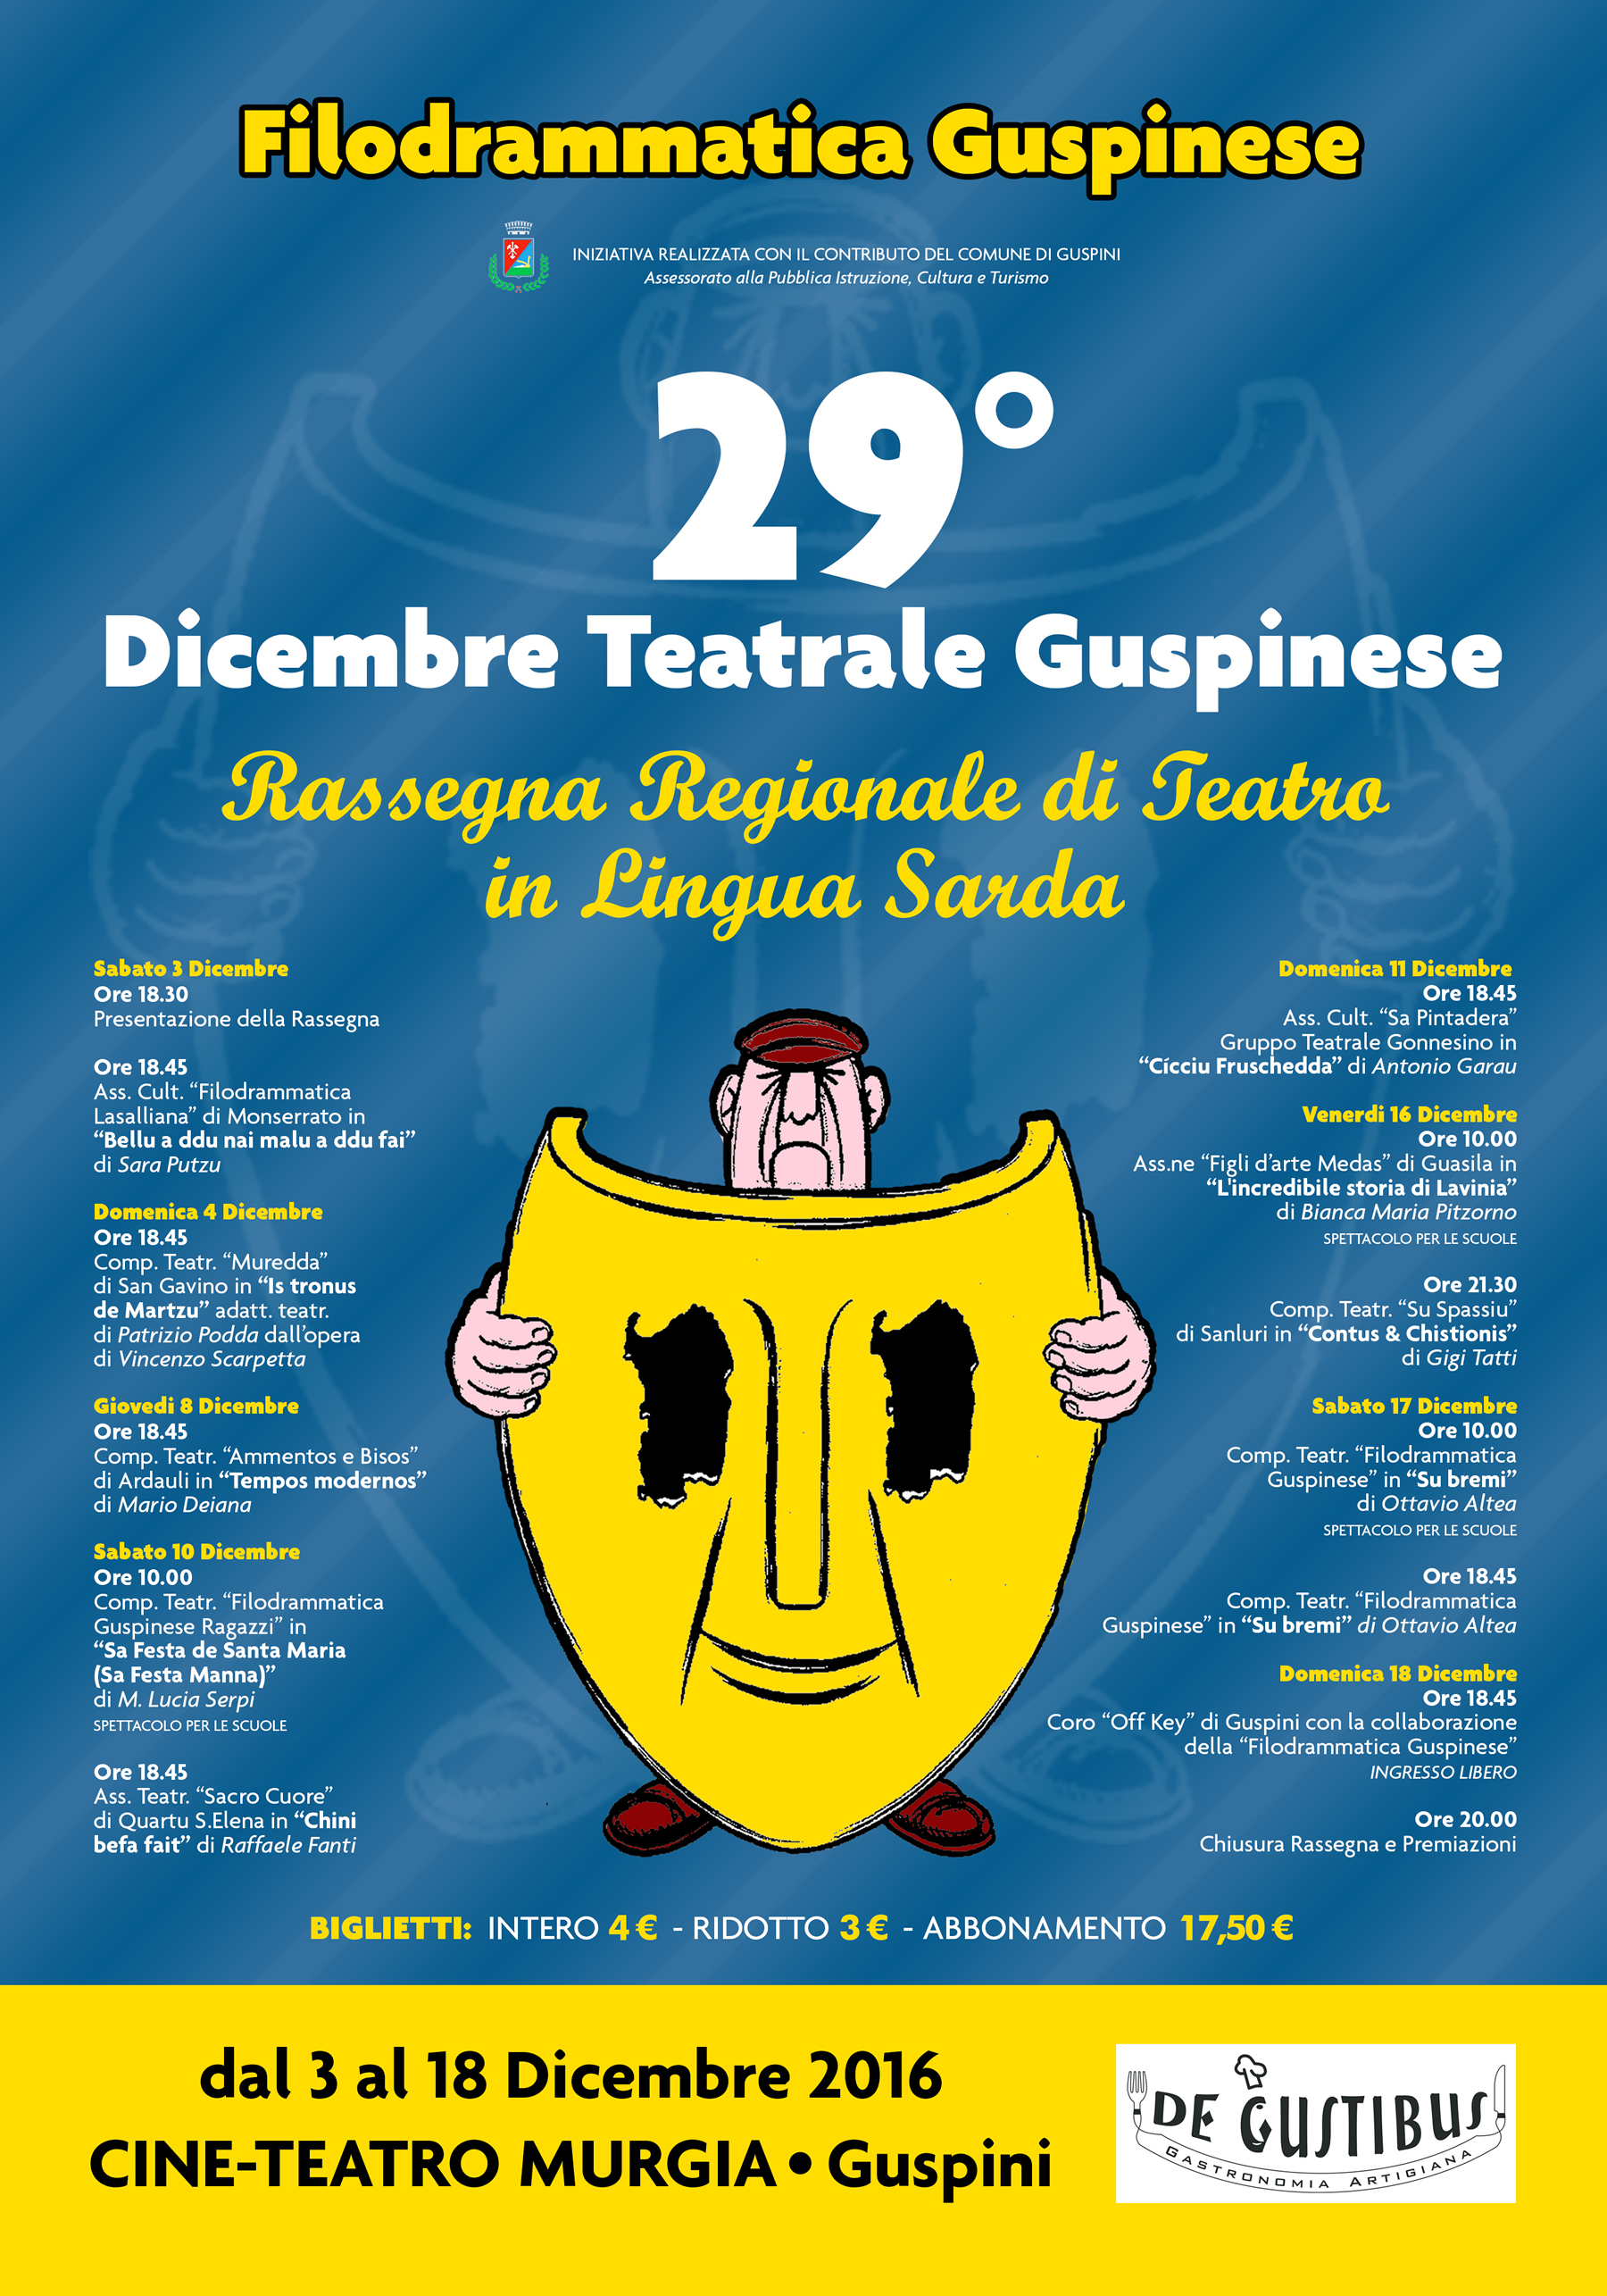 29° Dicembre Teatrale Guspinese della Filodrammatica